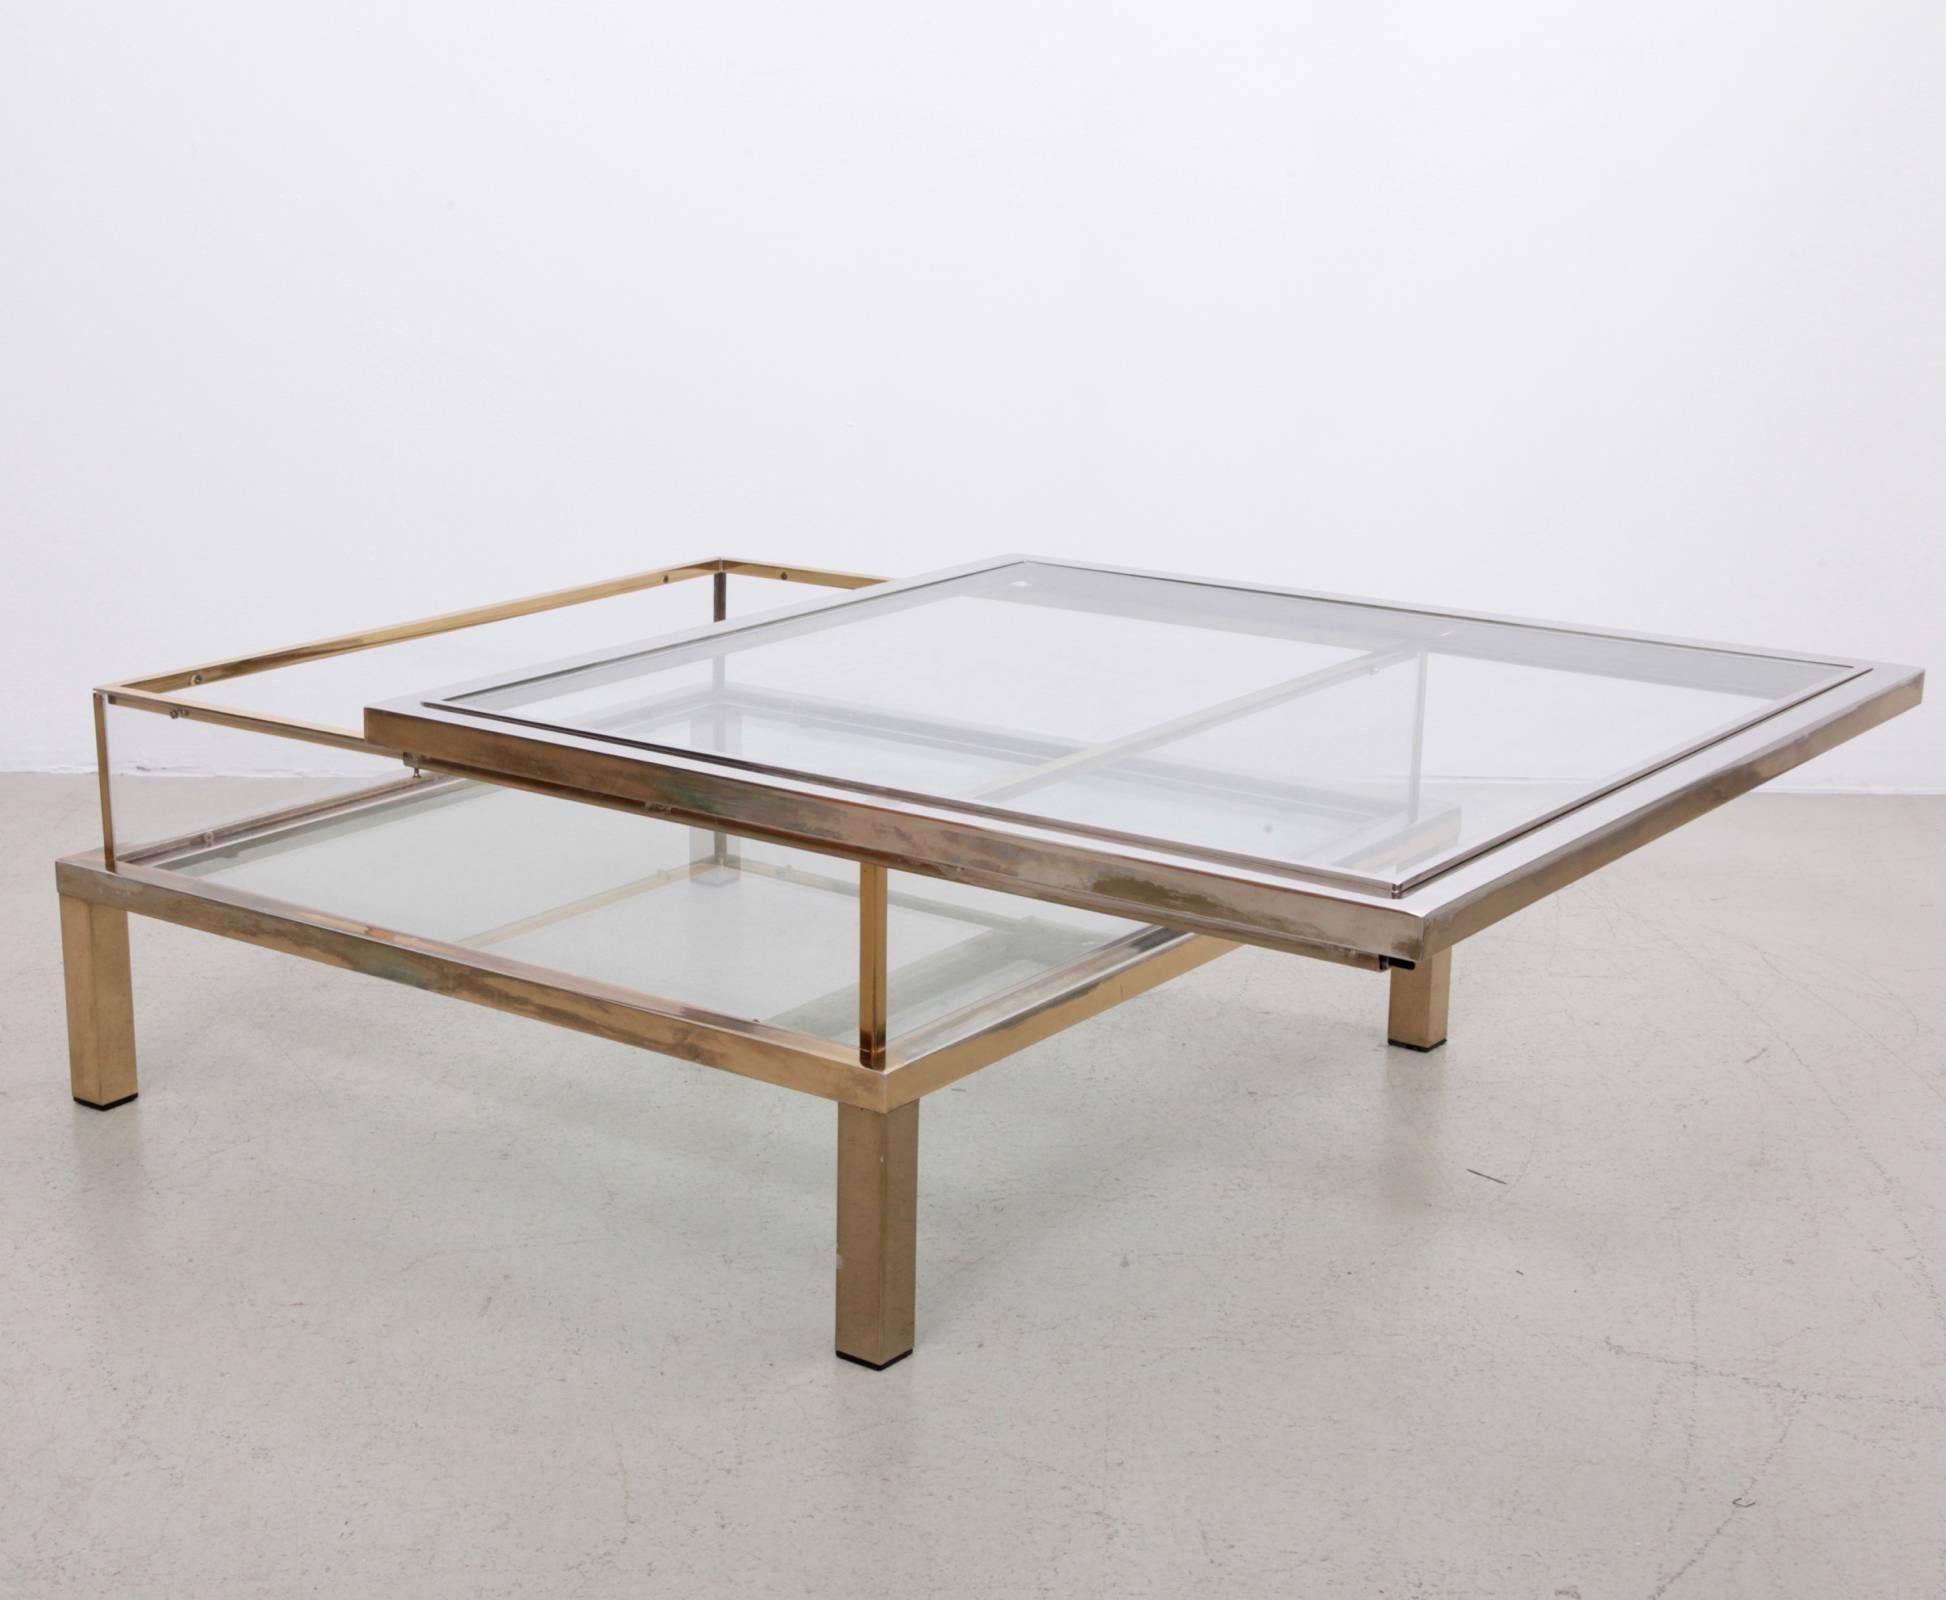 Großer quadratischer Glastisch mit Schiebeplatte von Maison Jansen. Der Rahmen ist aus vergoldetem und verchromtem Metall gefertigt. Der Tisch weist eine schöne Patina auf.

